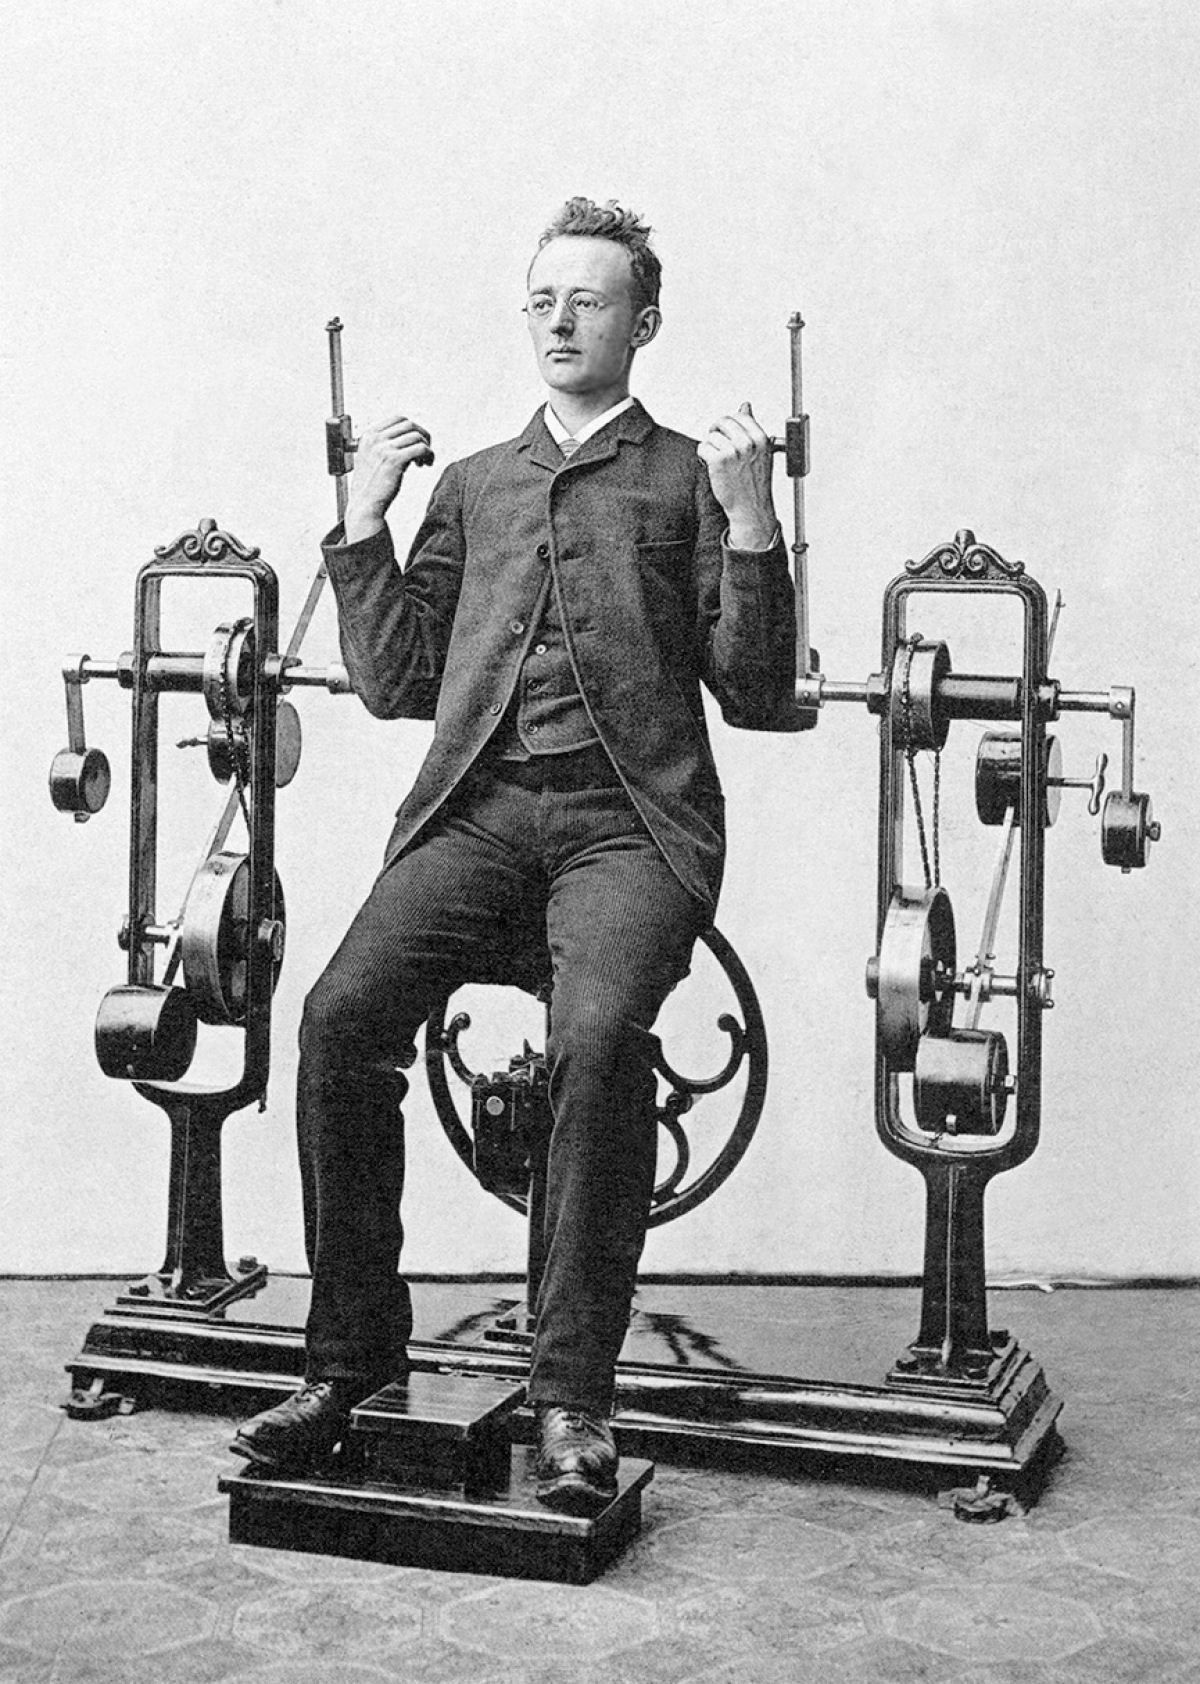 Suor e corset. Academia mecânica no século XIX 09